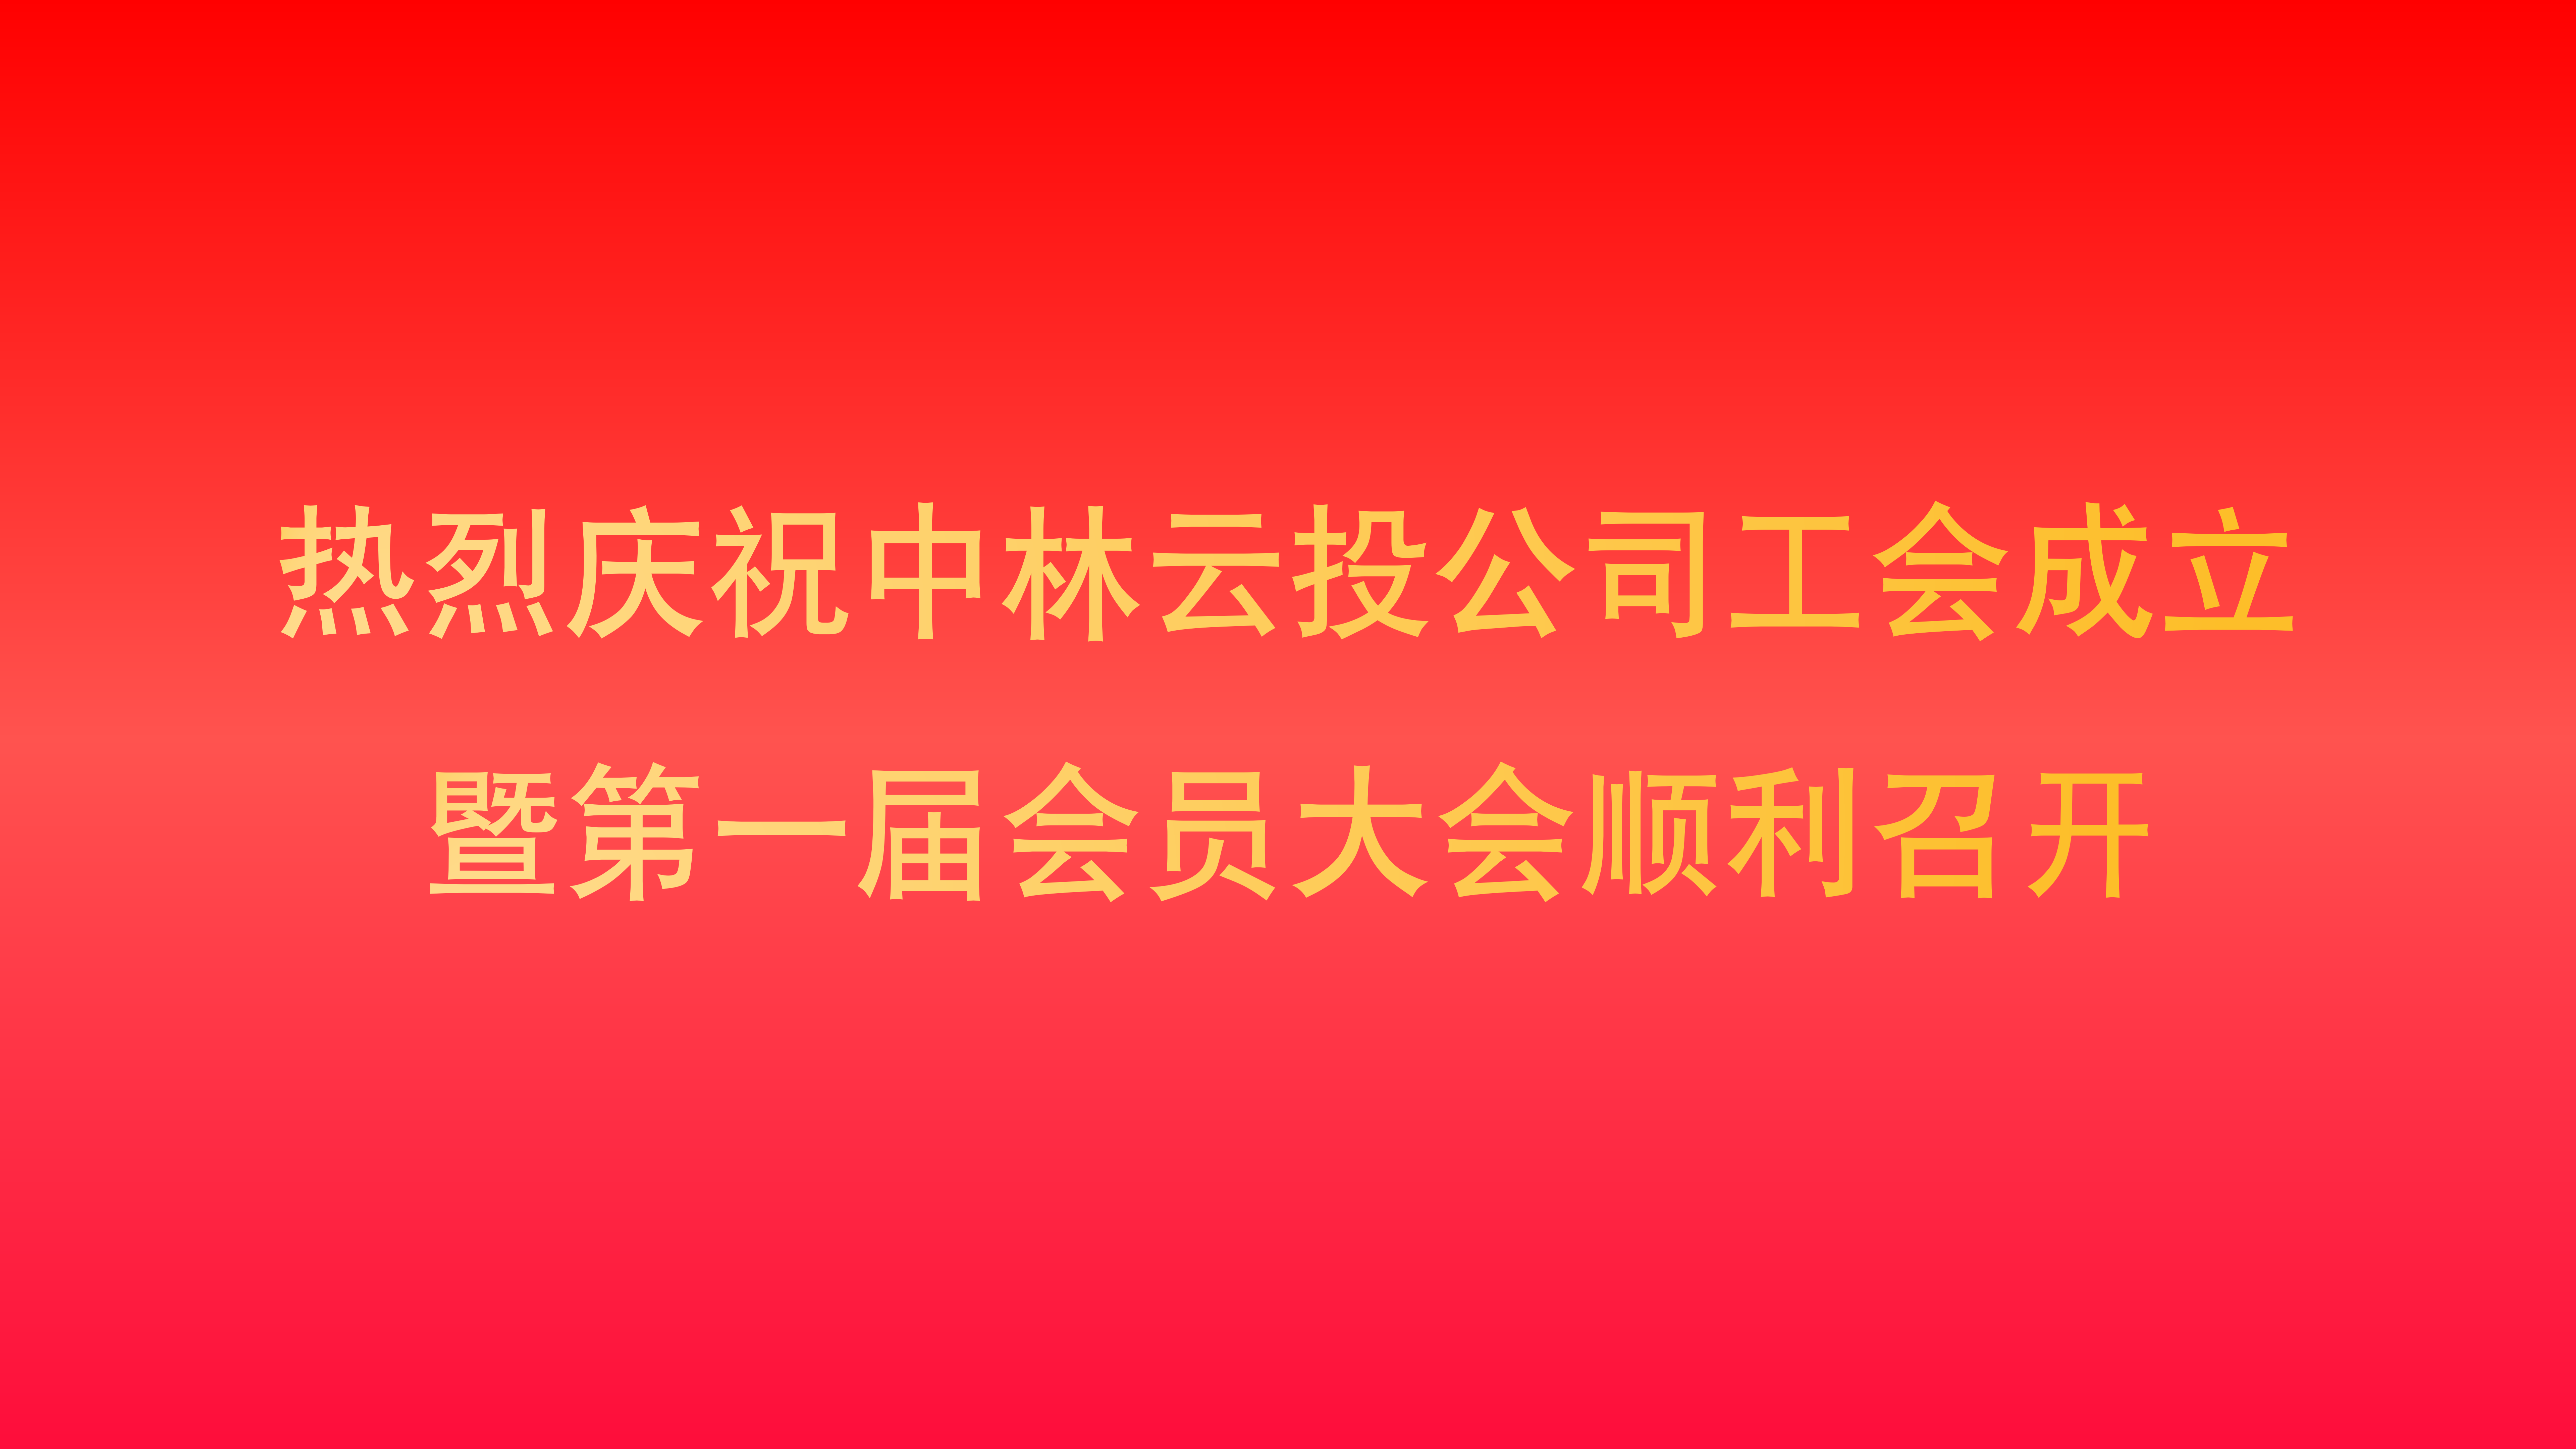 火狐官网登录入口公司成立工会并召开工会第一届会员大会